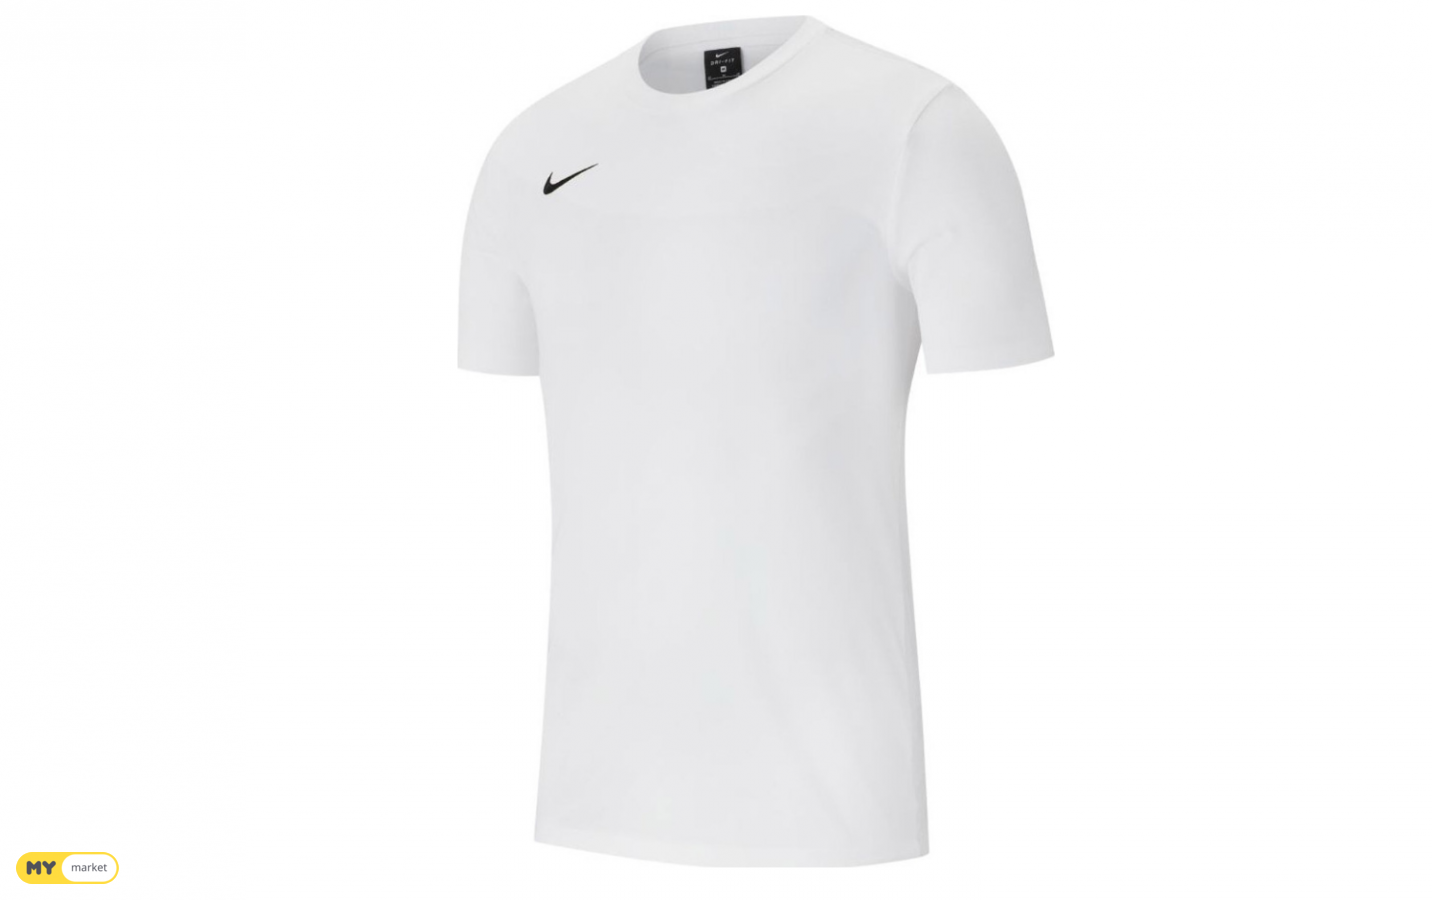 Nike - Club 19 Training Top / white / x 